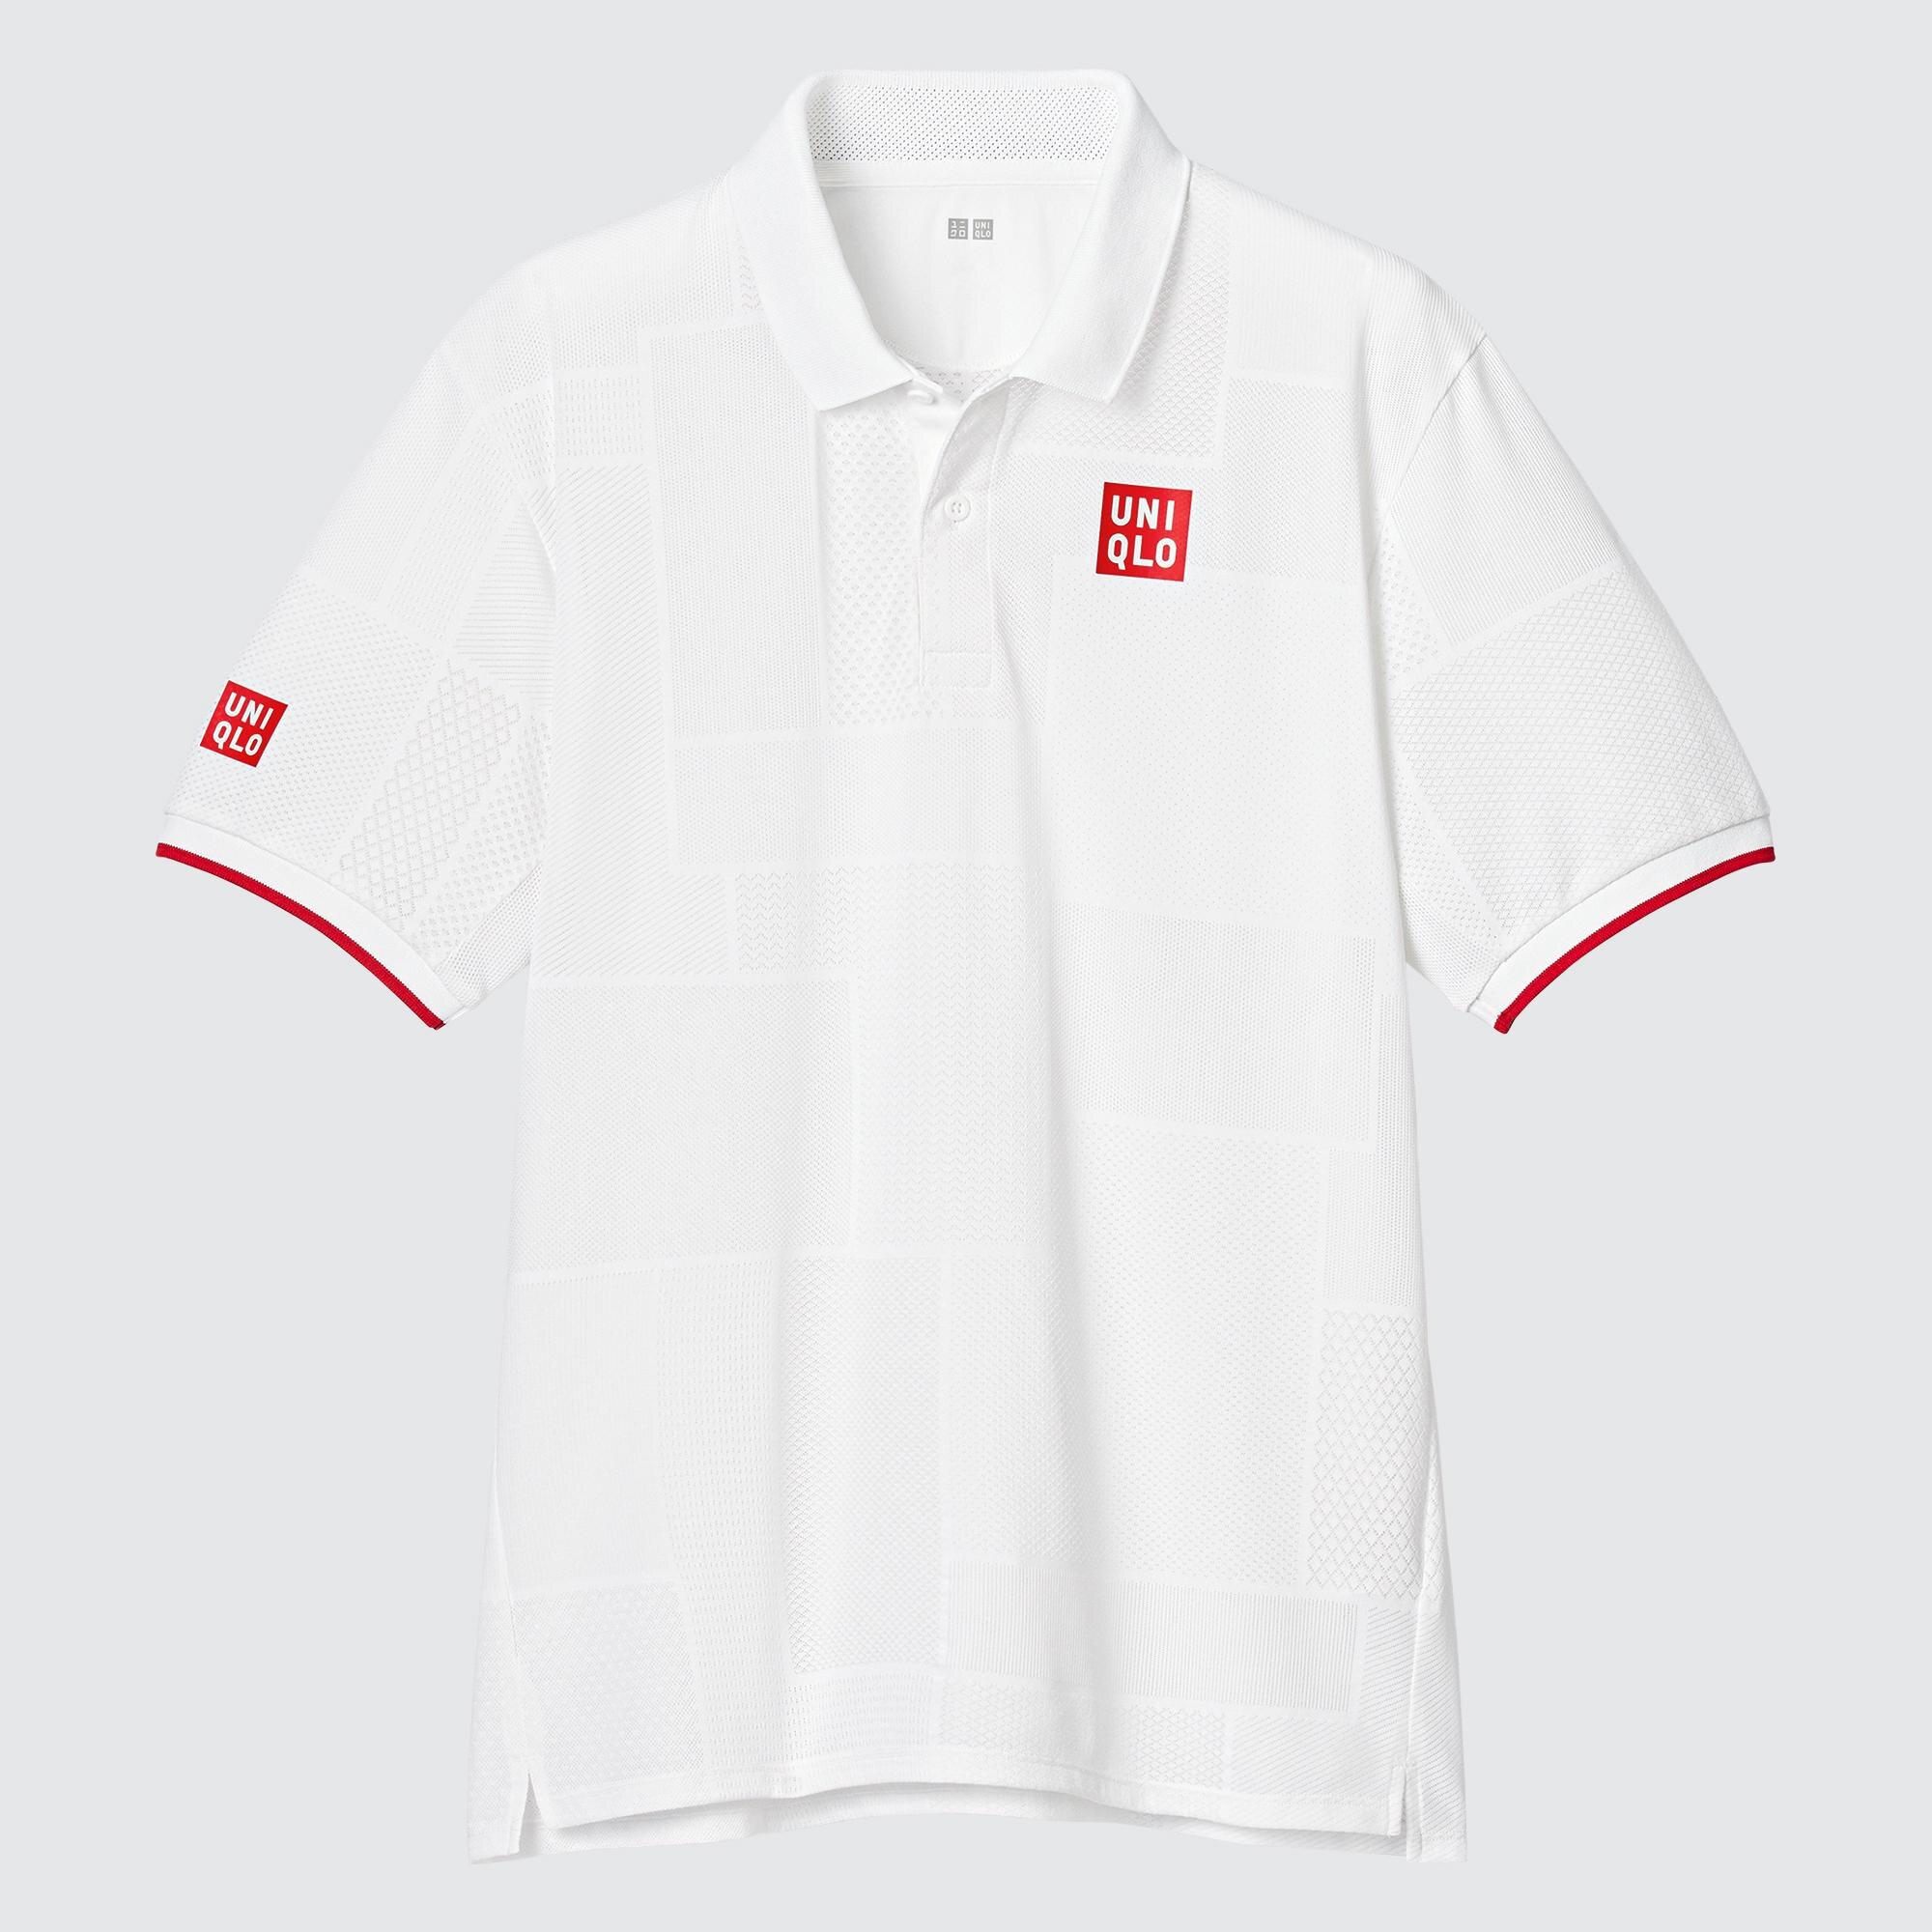 Cập nhật với hơn 61 về uniqlo golf shirts with logo - Du học Akina